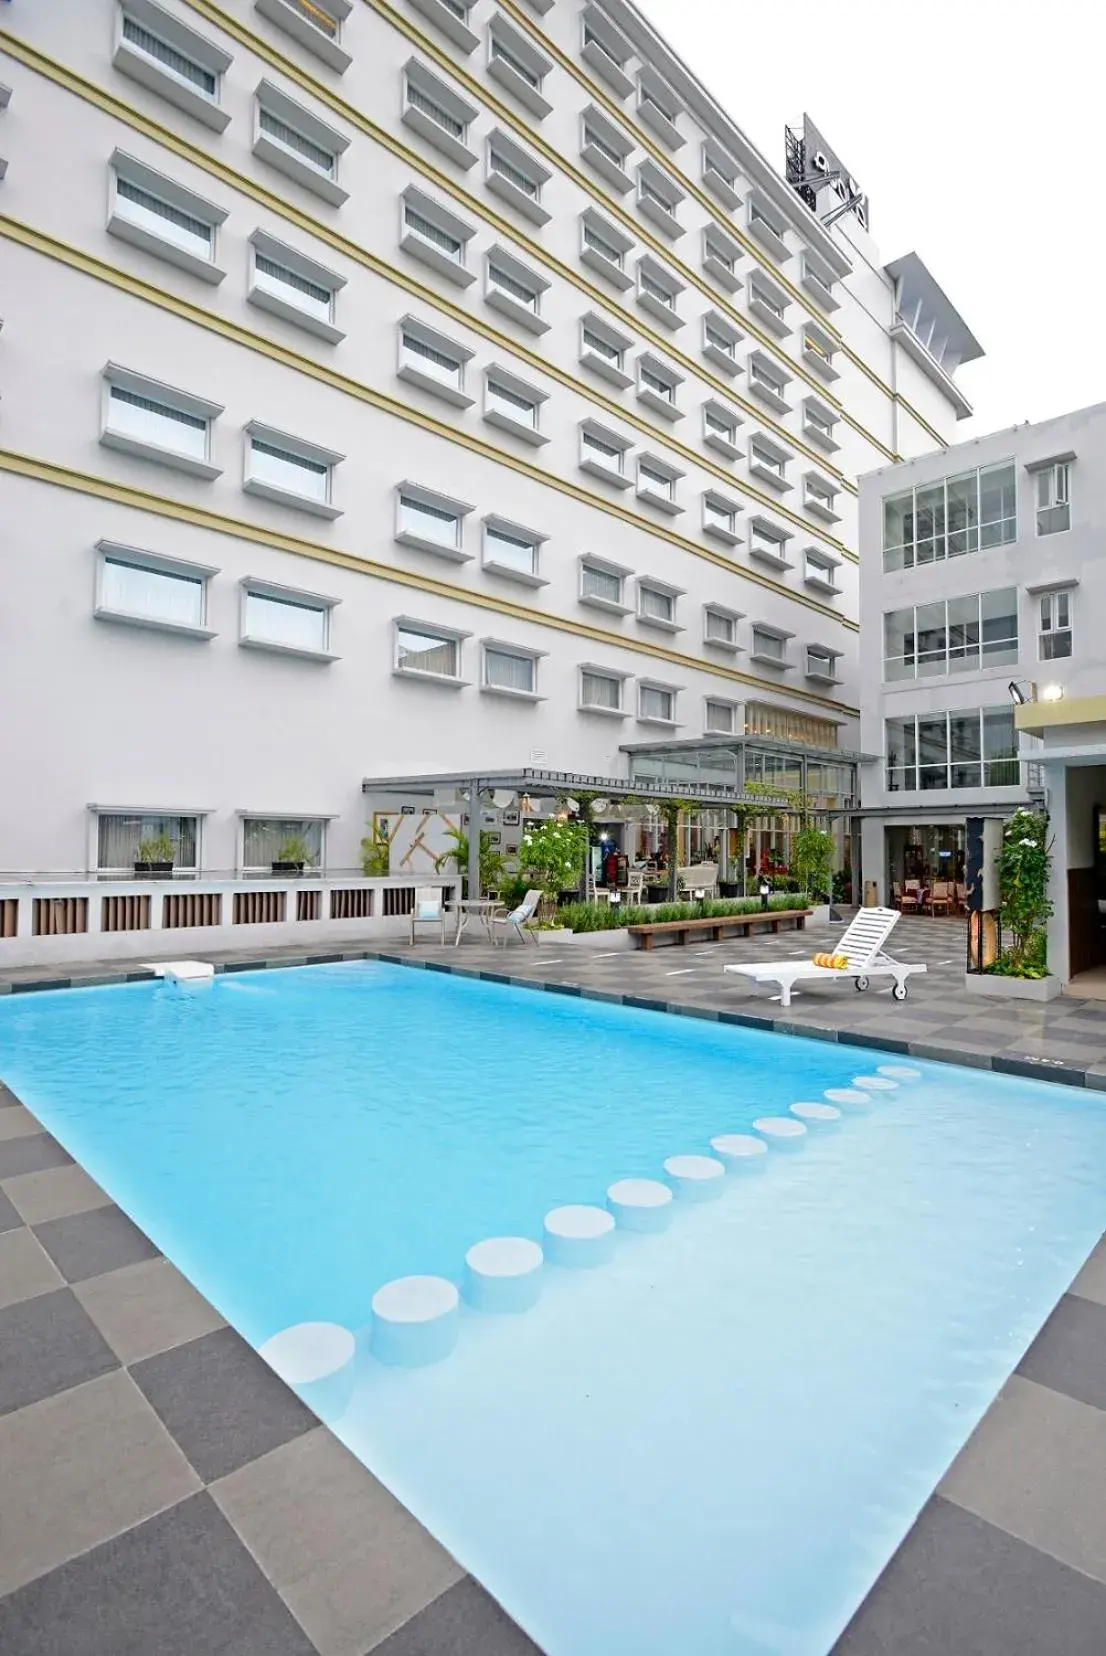 Swimming Pool in La Lisa Hotel Surabaya